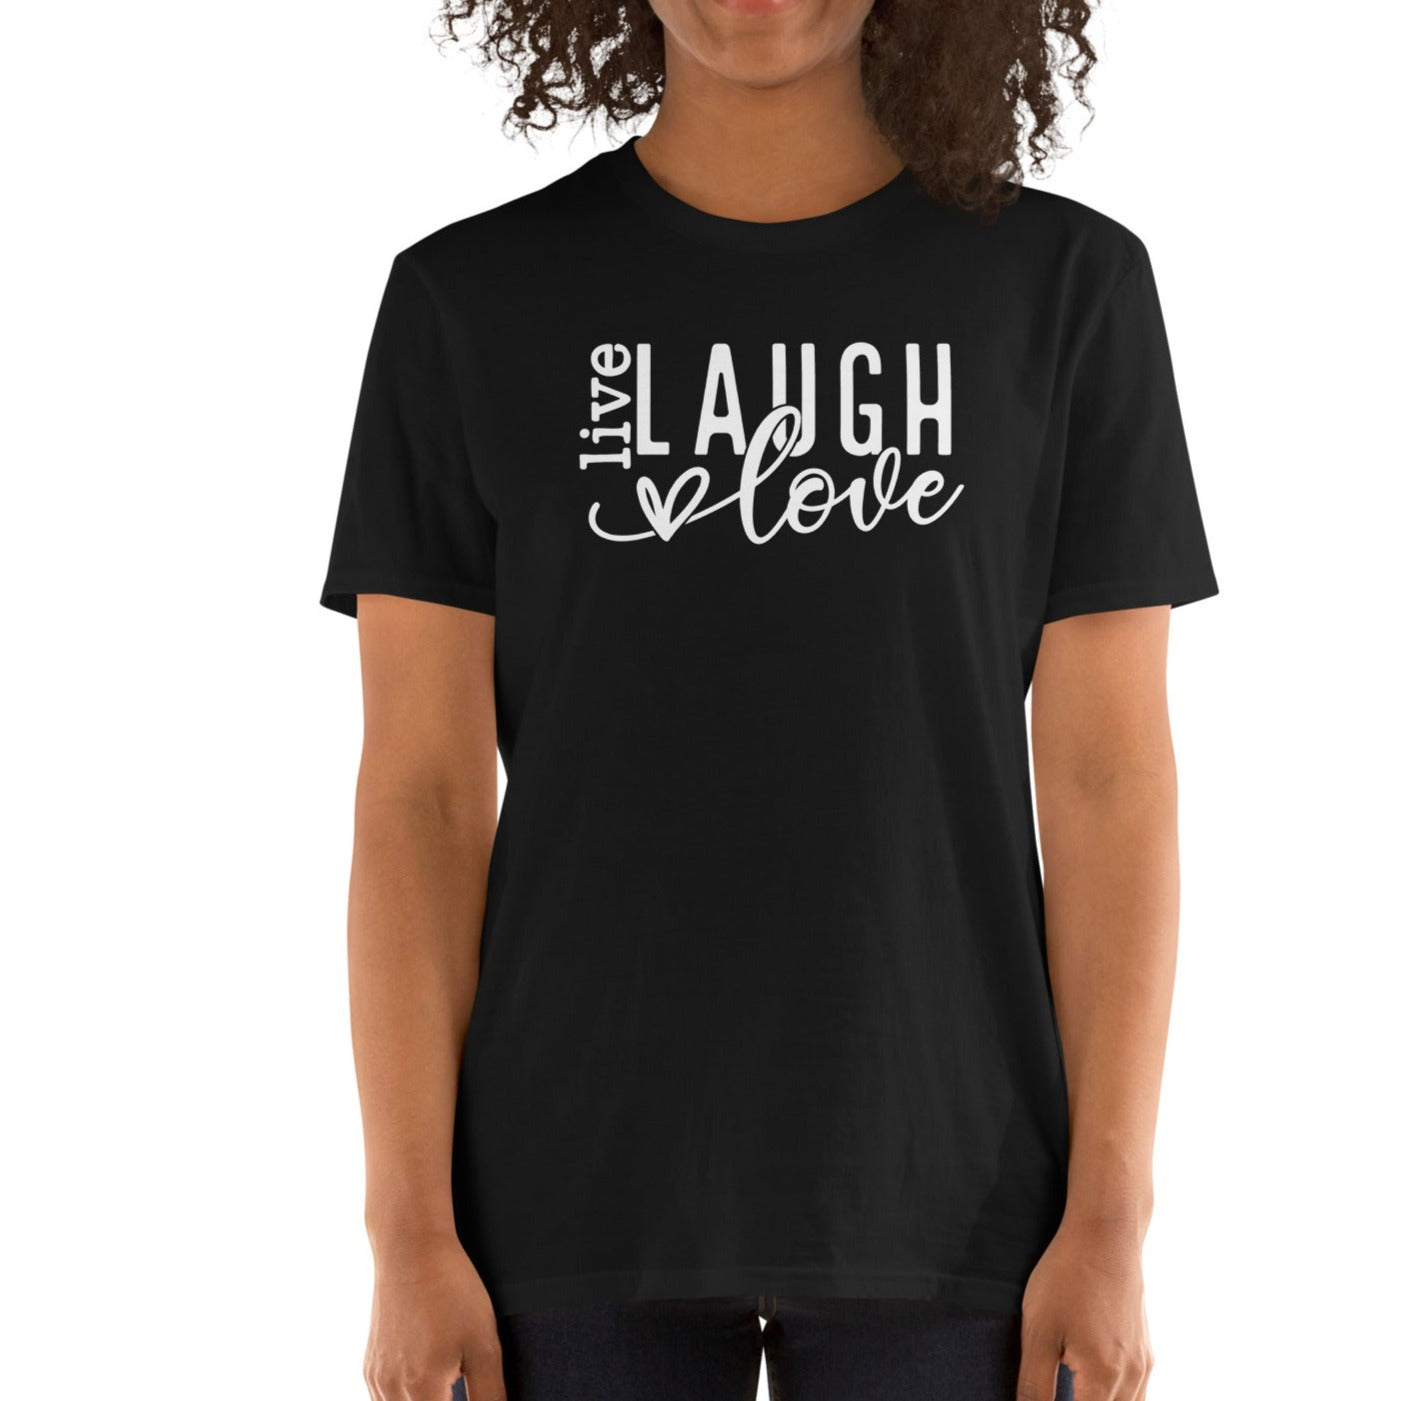 Unisex t-shirt: Laugh, love, live